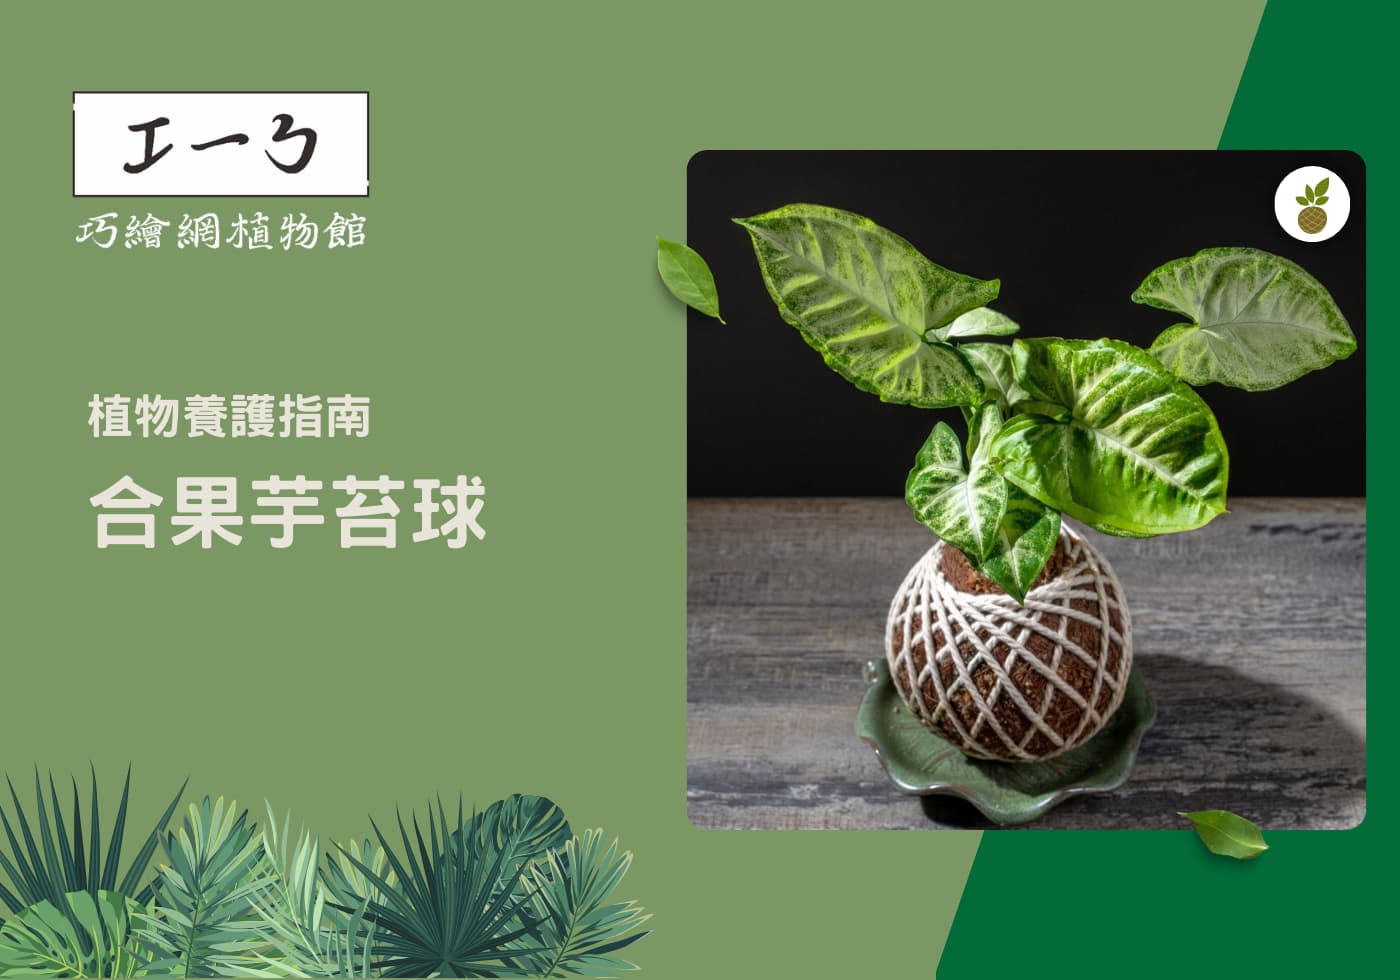 您目前正在查看 如何養出健康茂盛的綠色植物-合果芋栽培指南